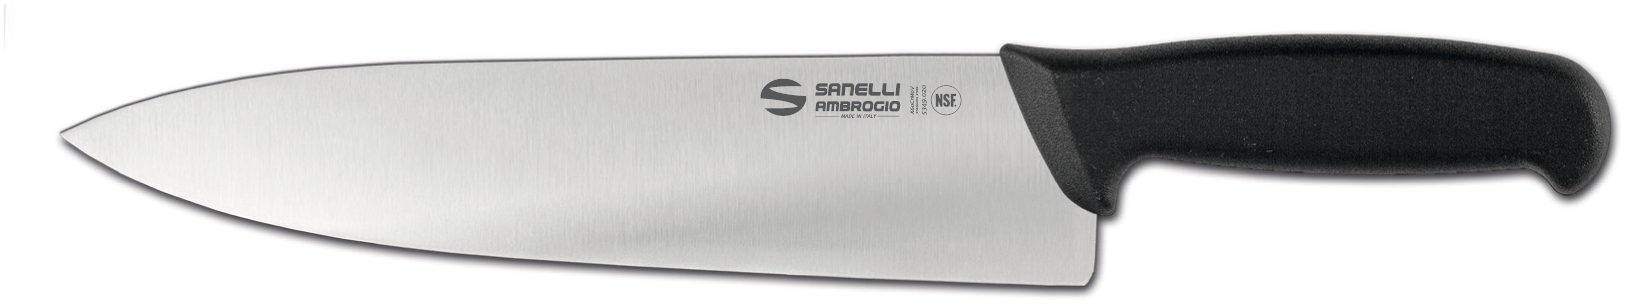 S349.024 SUPRA CHEF KNIFE 24CM LAMA SANELLI AMBROGIO